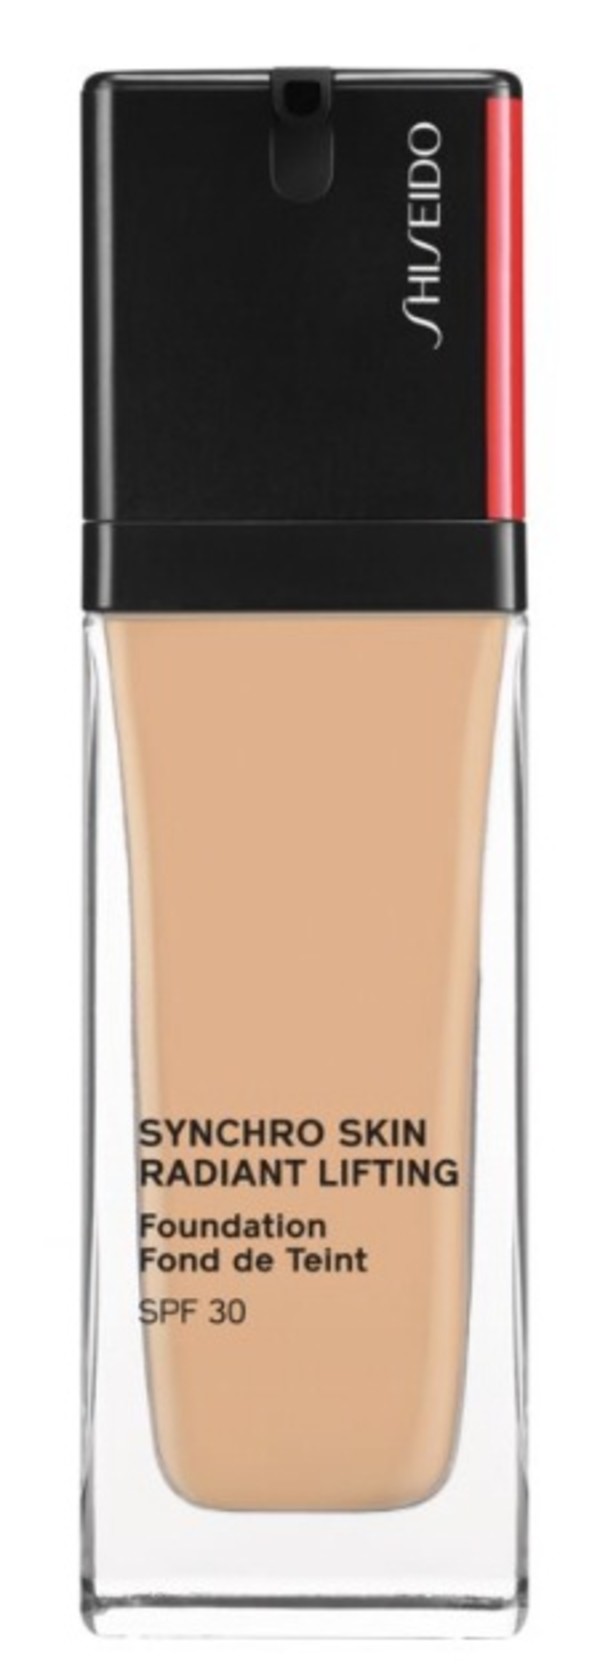 Synchro Skin Radiant Lifting 310 Podkład w płynie